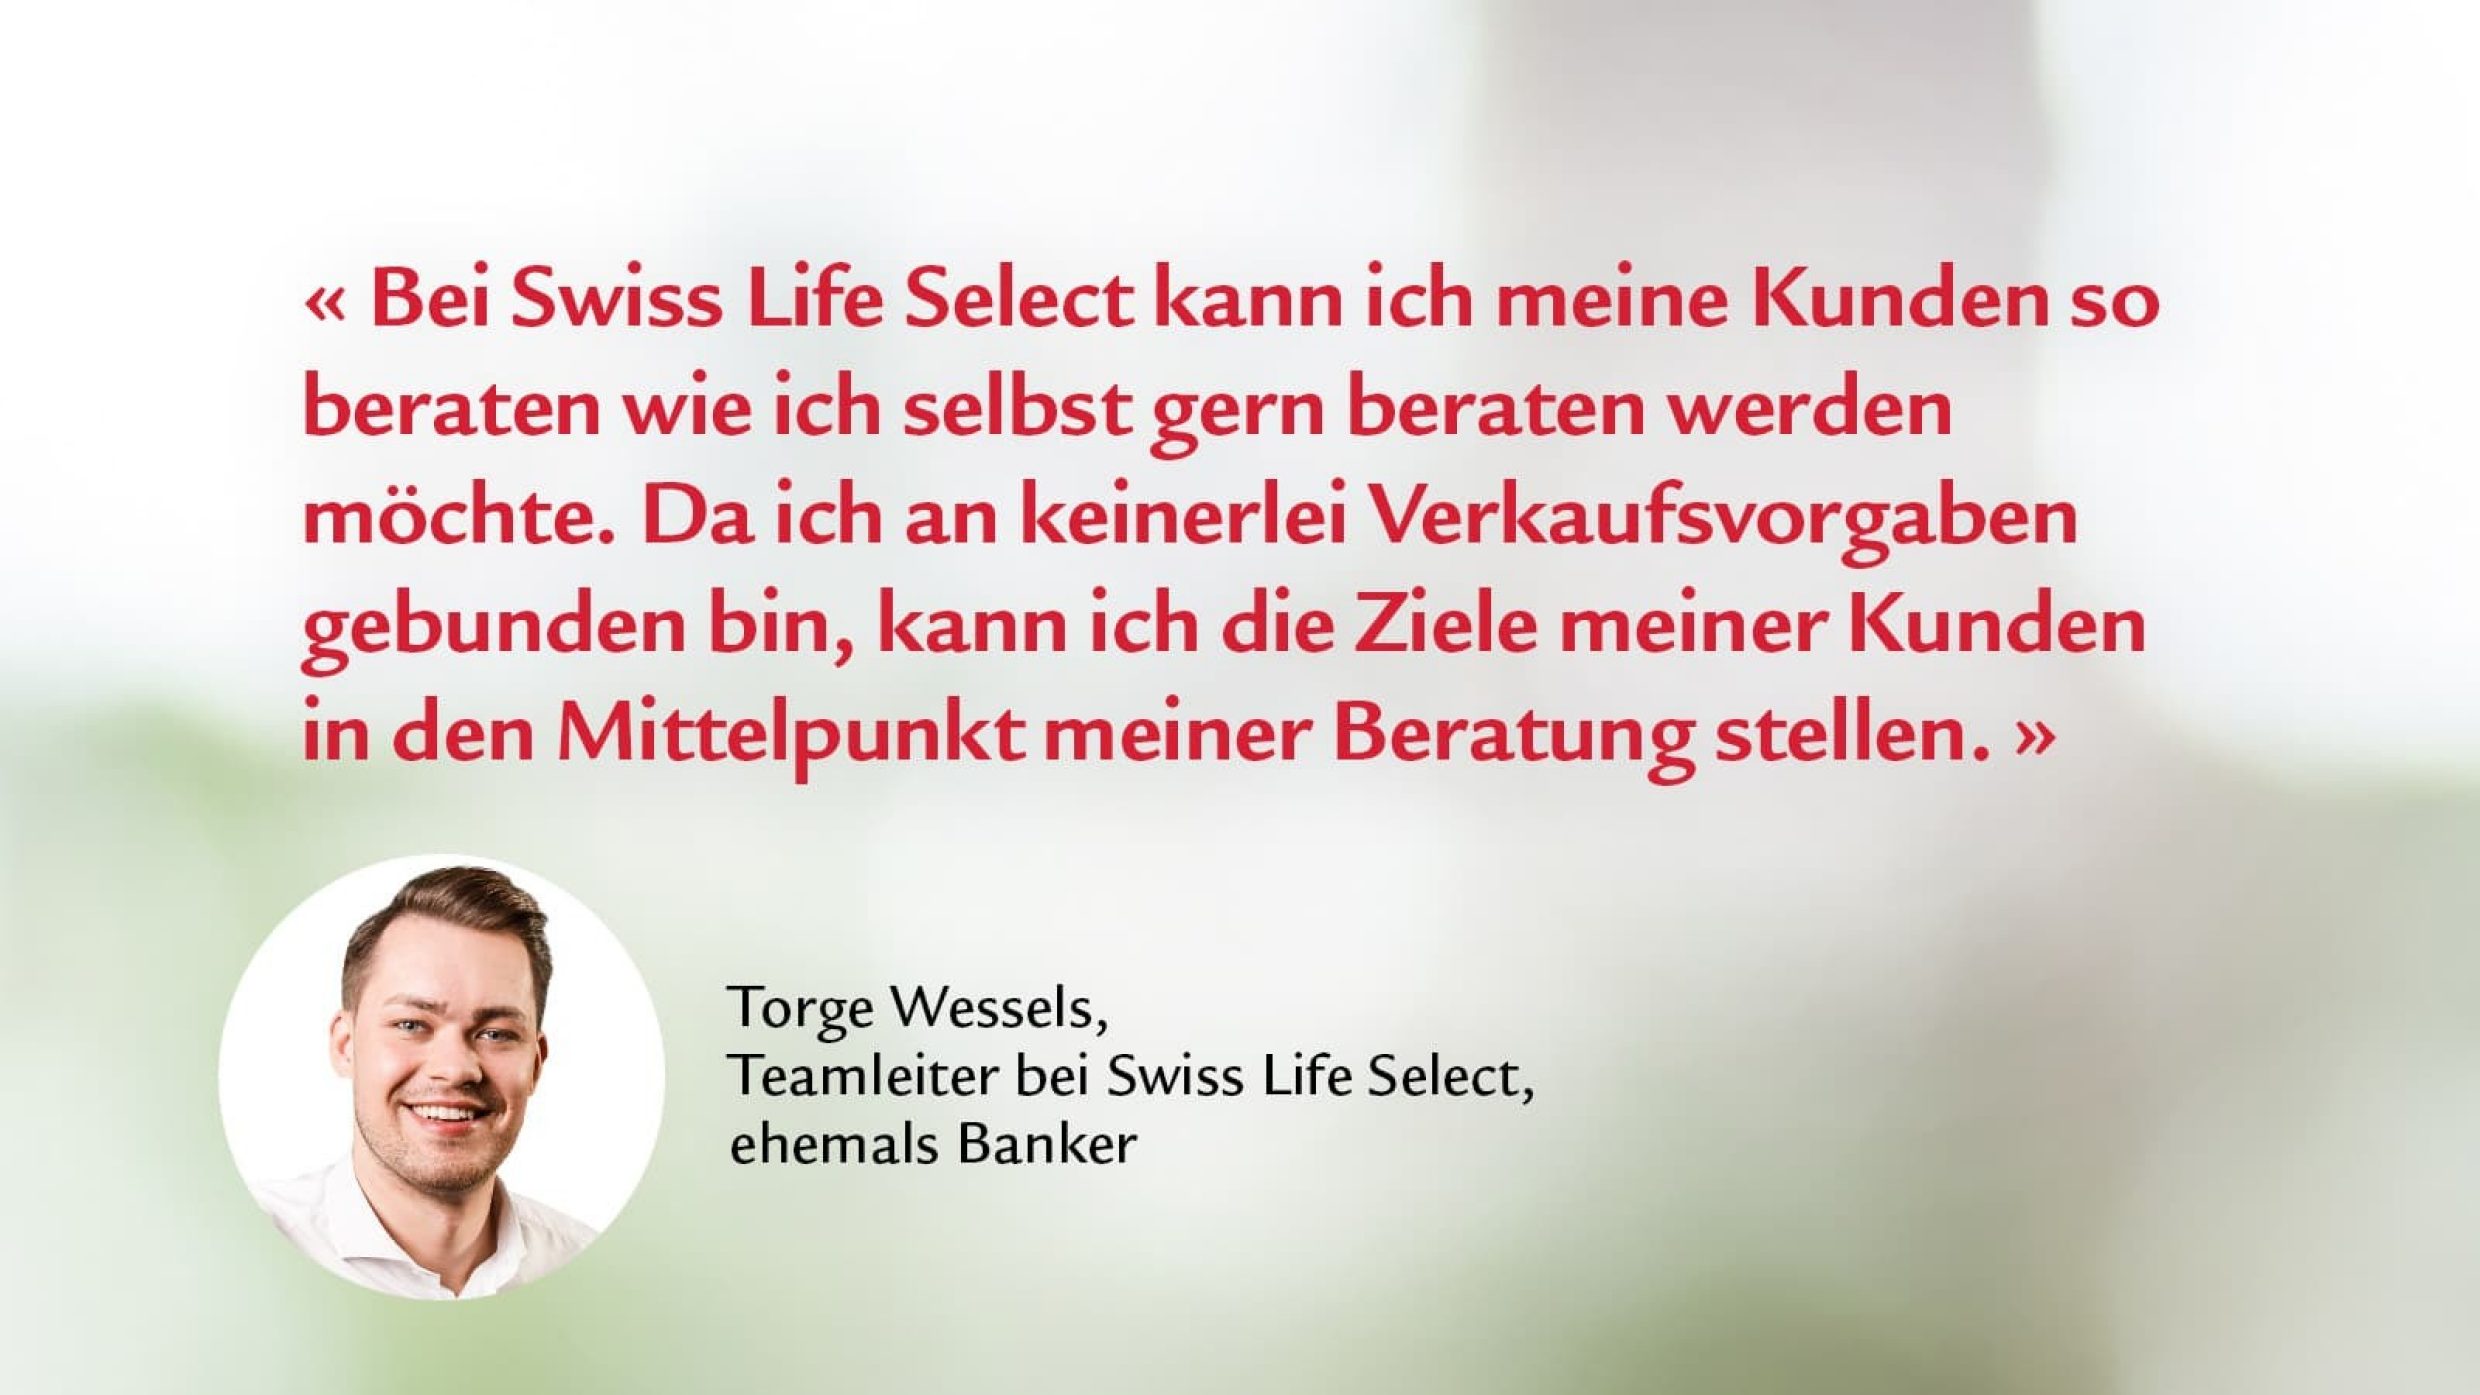 Die Hierarchie bei Swiss Life Select ist flacher als bei der Bank.